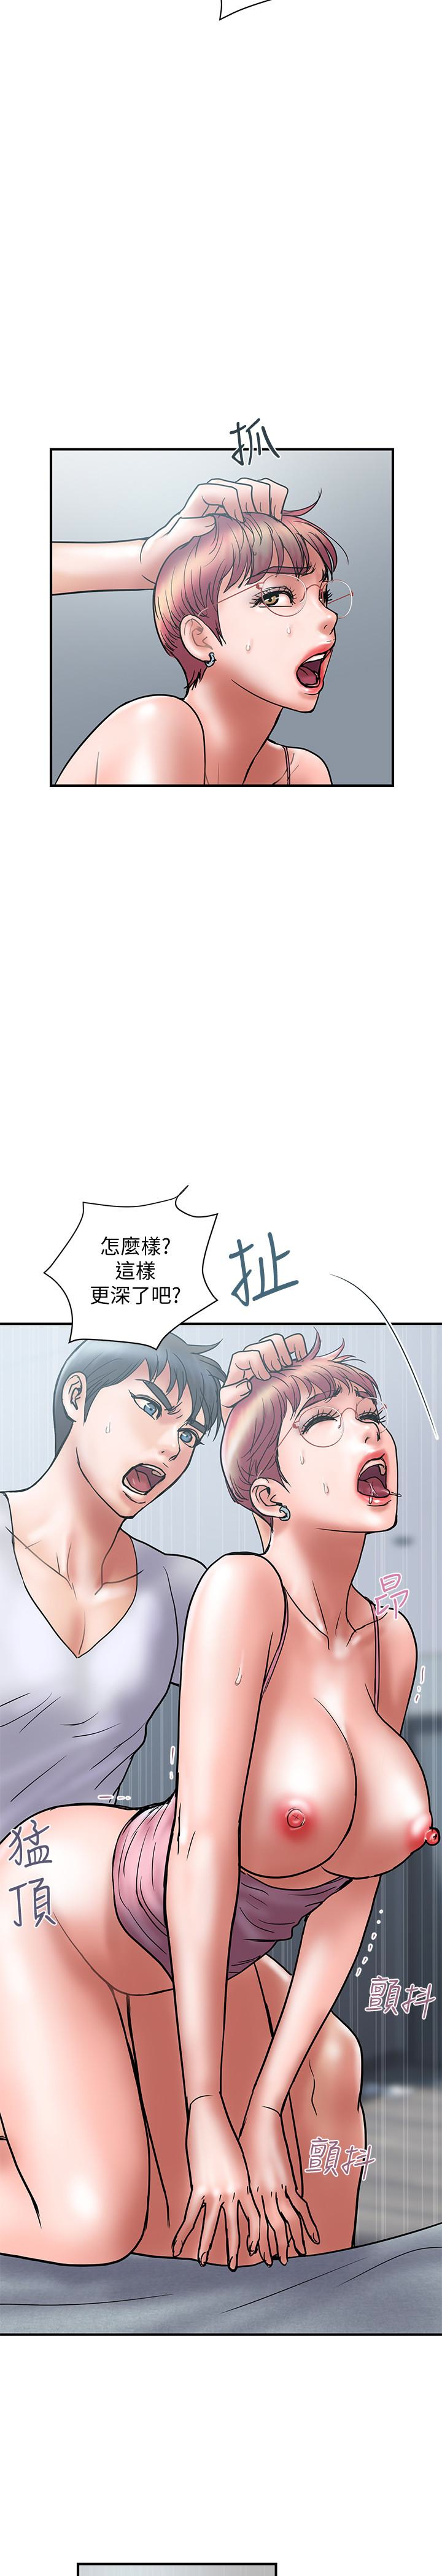 韩国污漫画 計劃出軌 第23话-逐渐堕落的身心灵 14